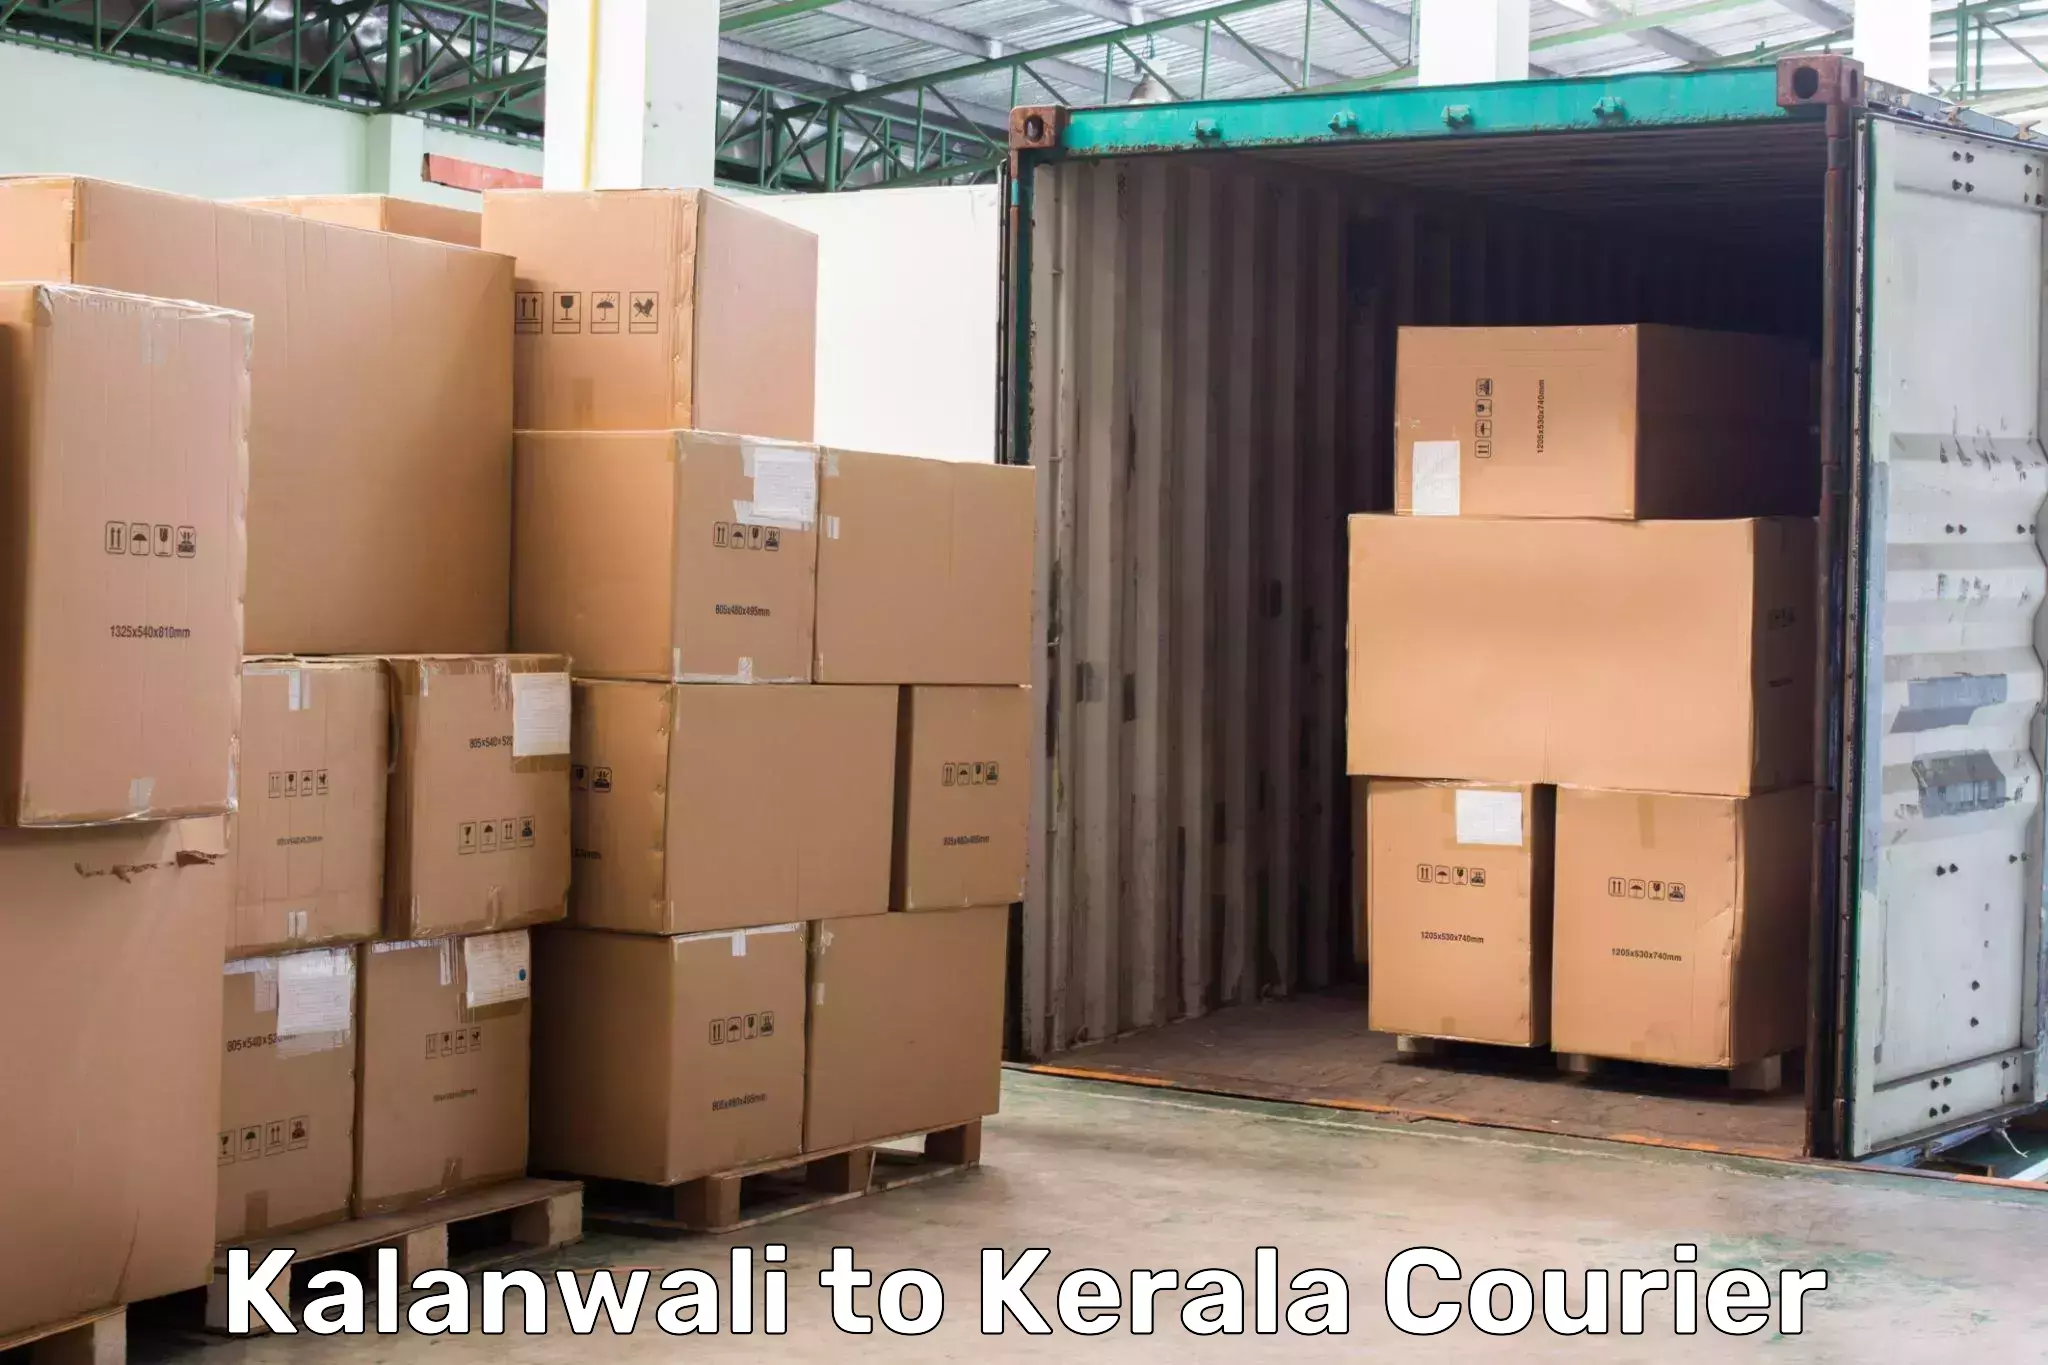 International courier rates Kalanwali to Panayathamparamba